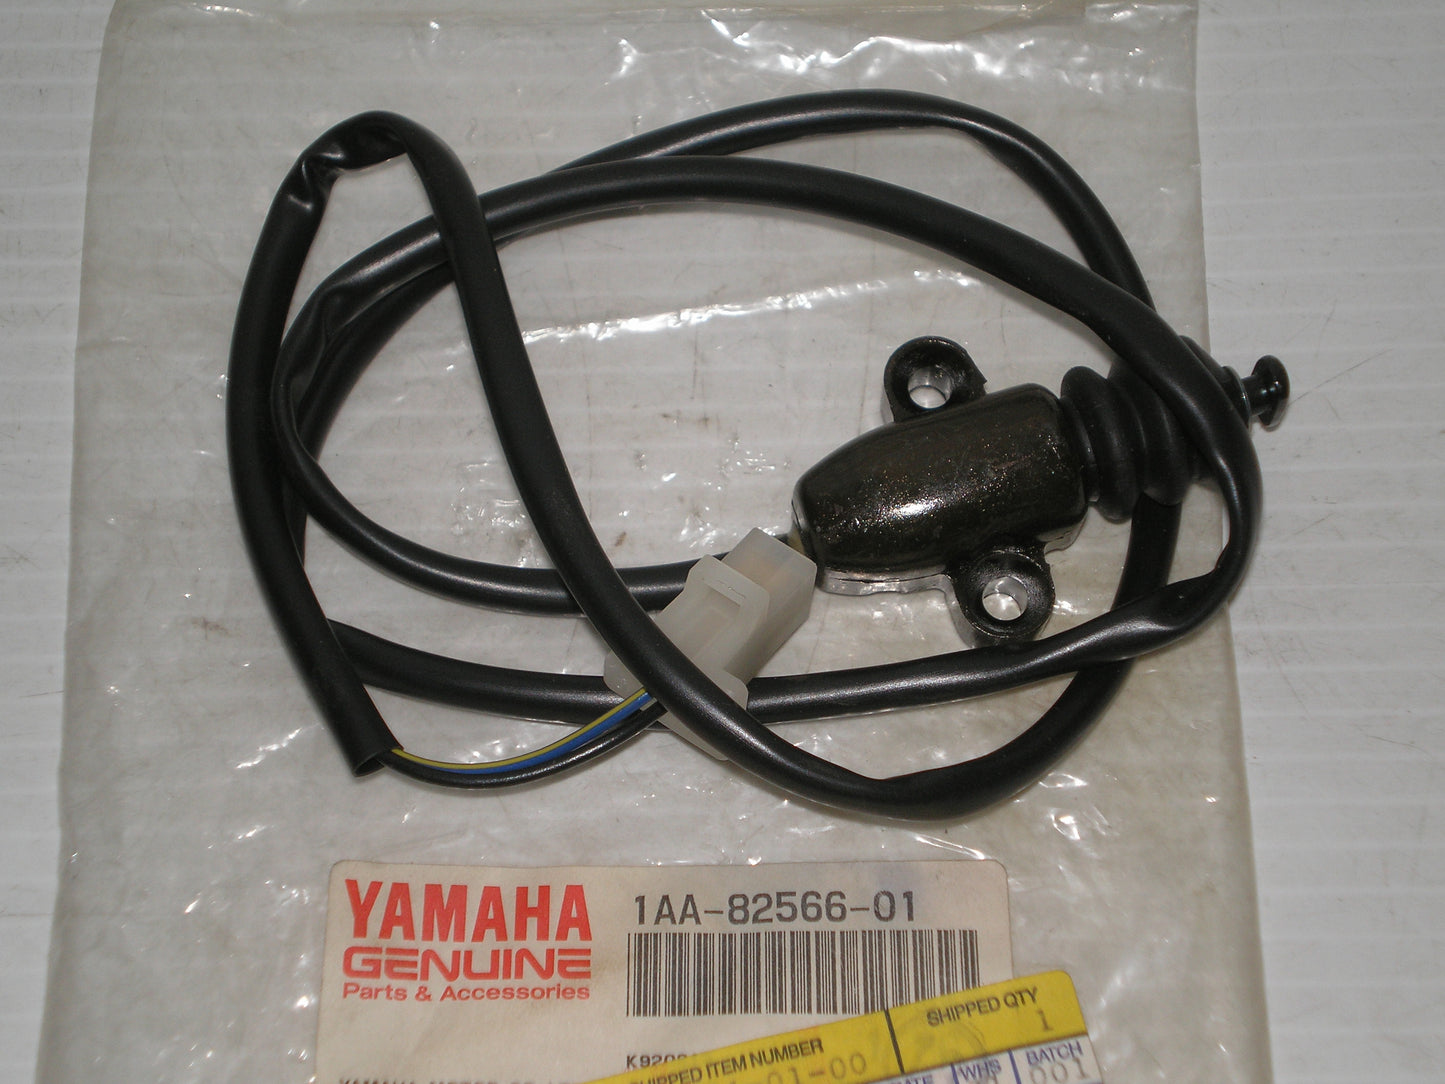 YAMAHA FZ750 XJ700 XJ750  Side Stand Safety Switch  1AA-82566-00 / 1AA-82566-01